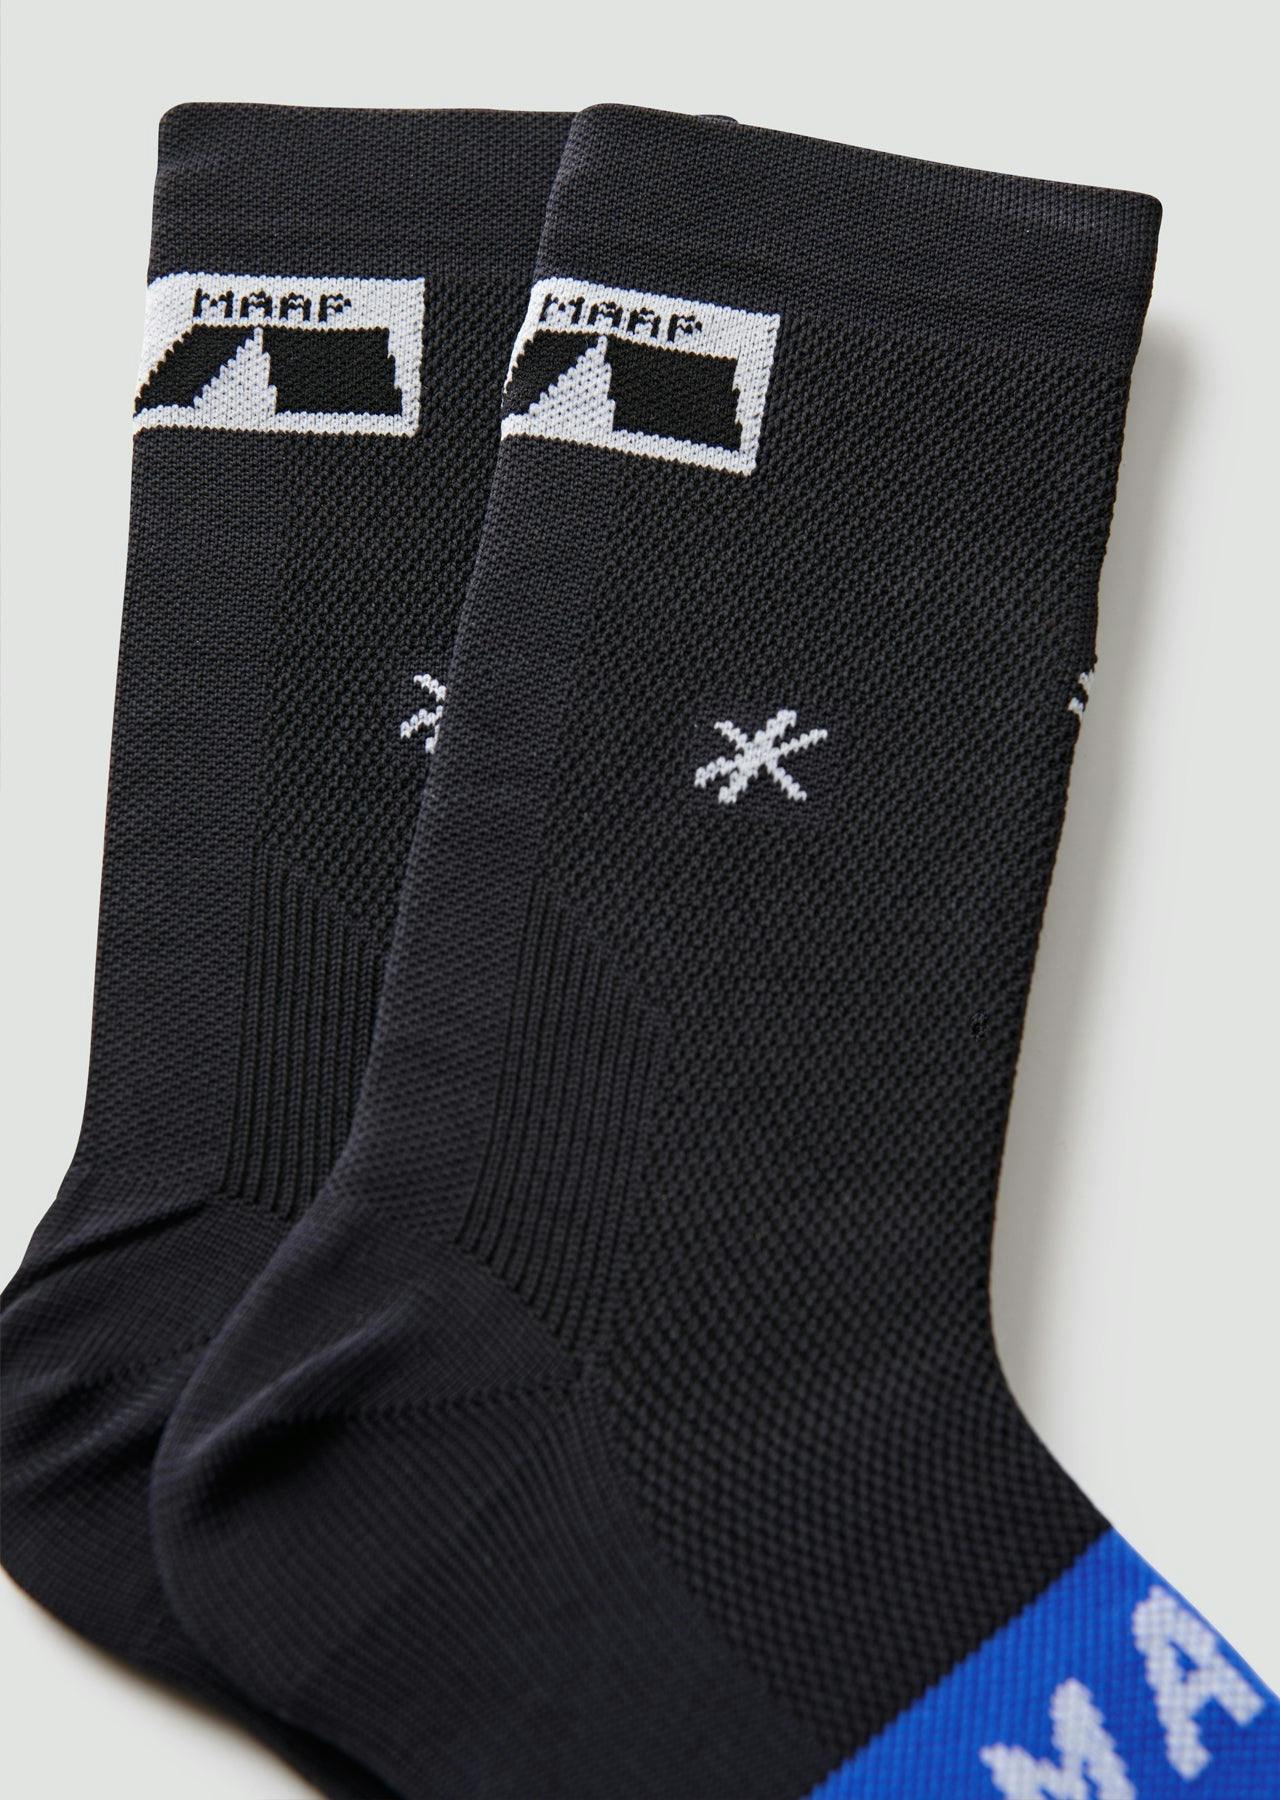 Axis Socks